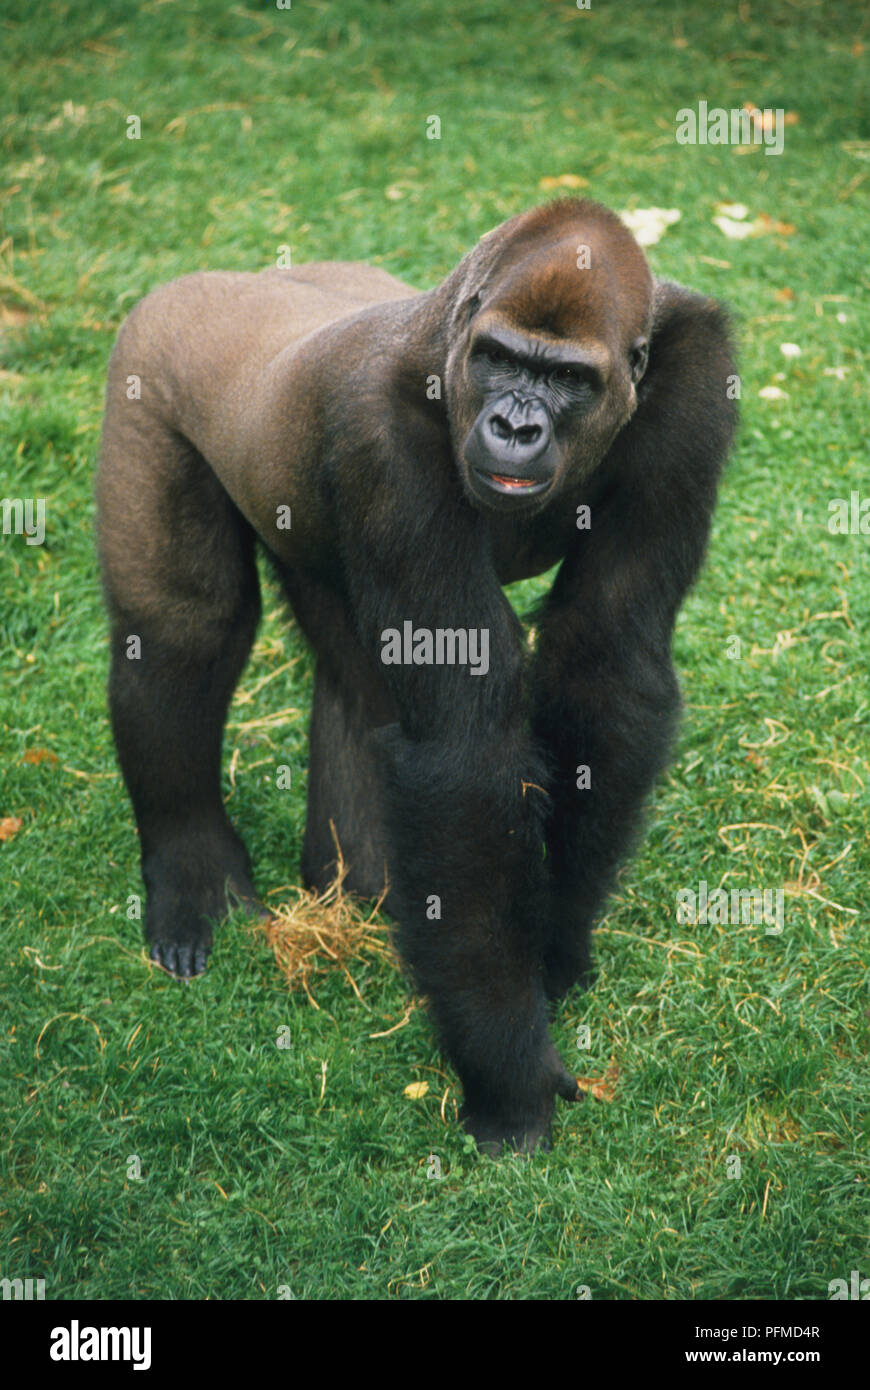 Maschio adulto di pianura (Gorilla Gorilla beringei graueri) a carponi sull'erba. Foto Stock